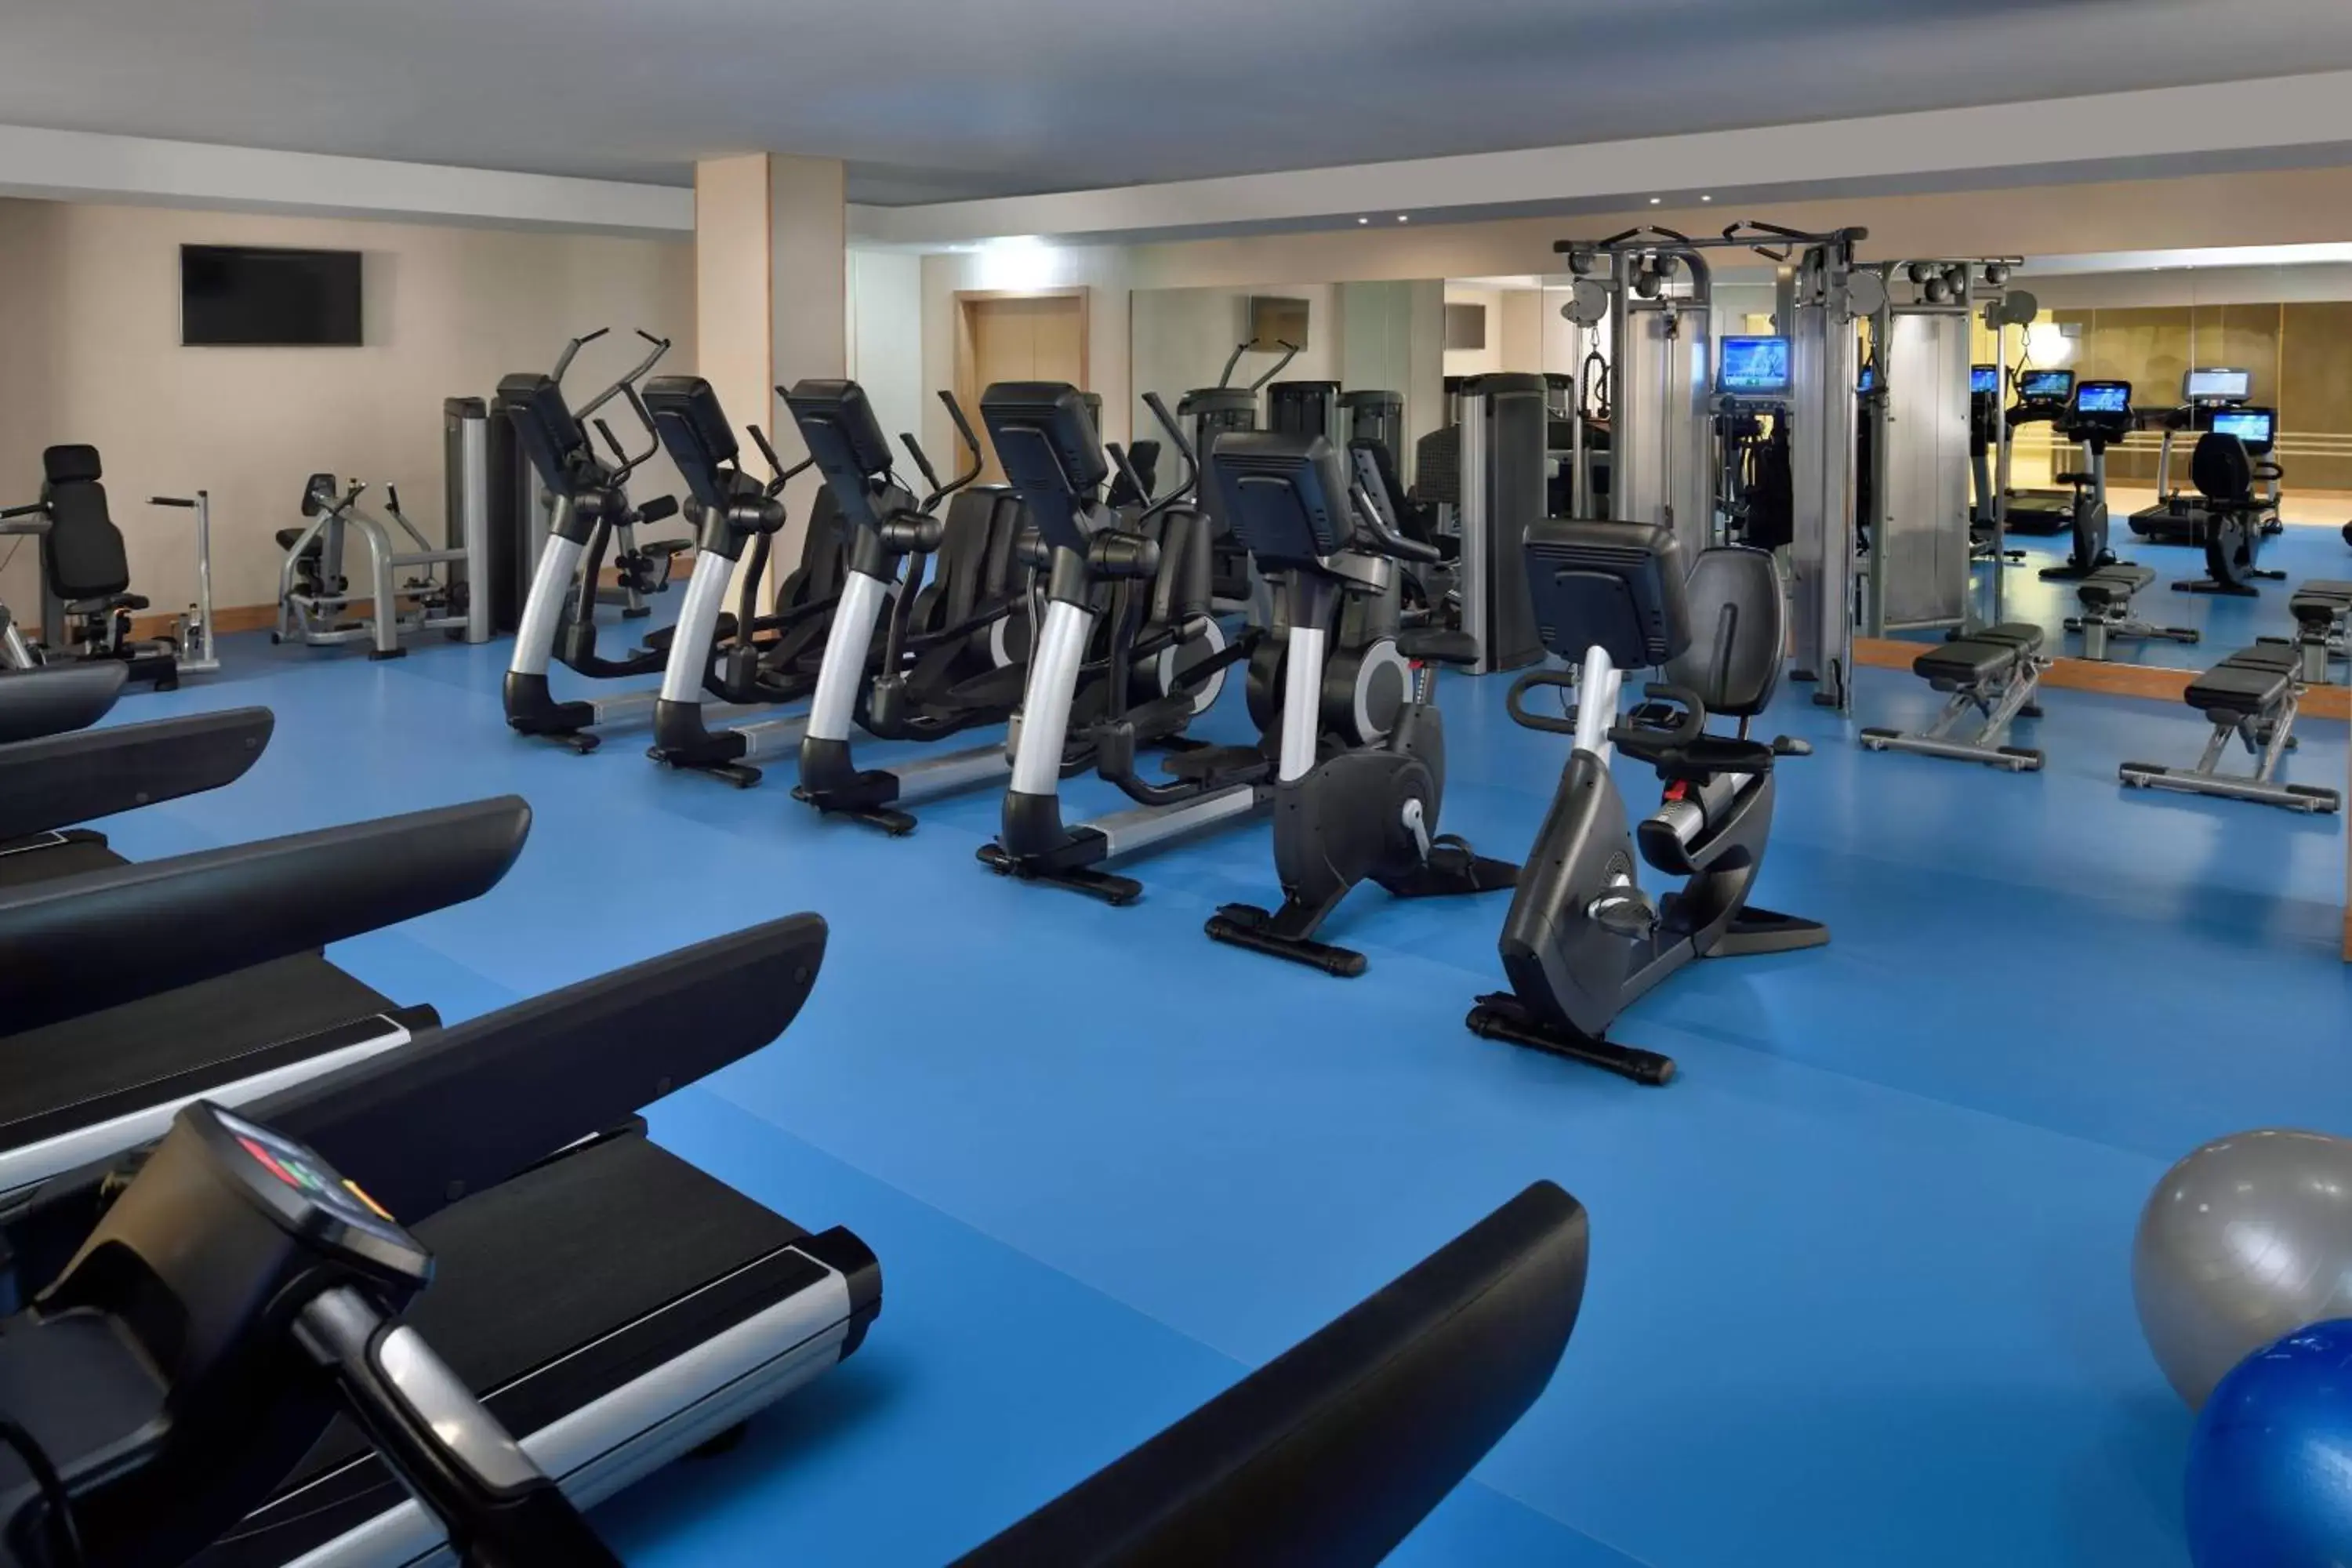 Fitness centre/facilities, Fitness Center/Facilities in Kigali Marriott Hotel